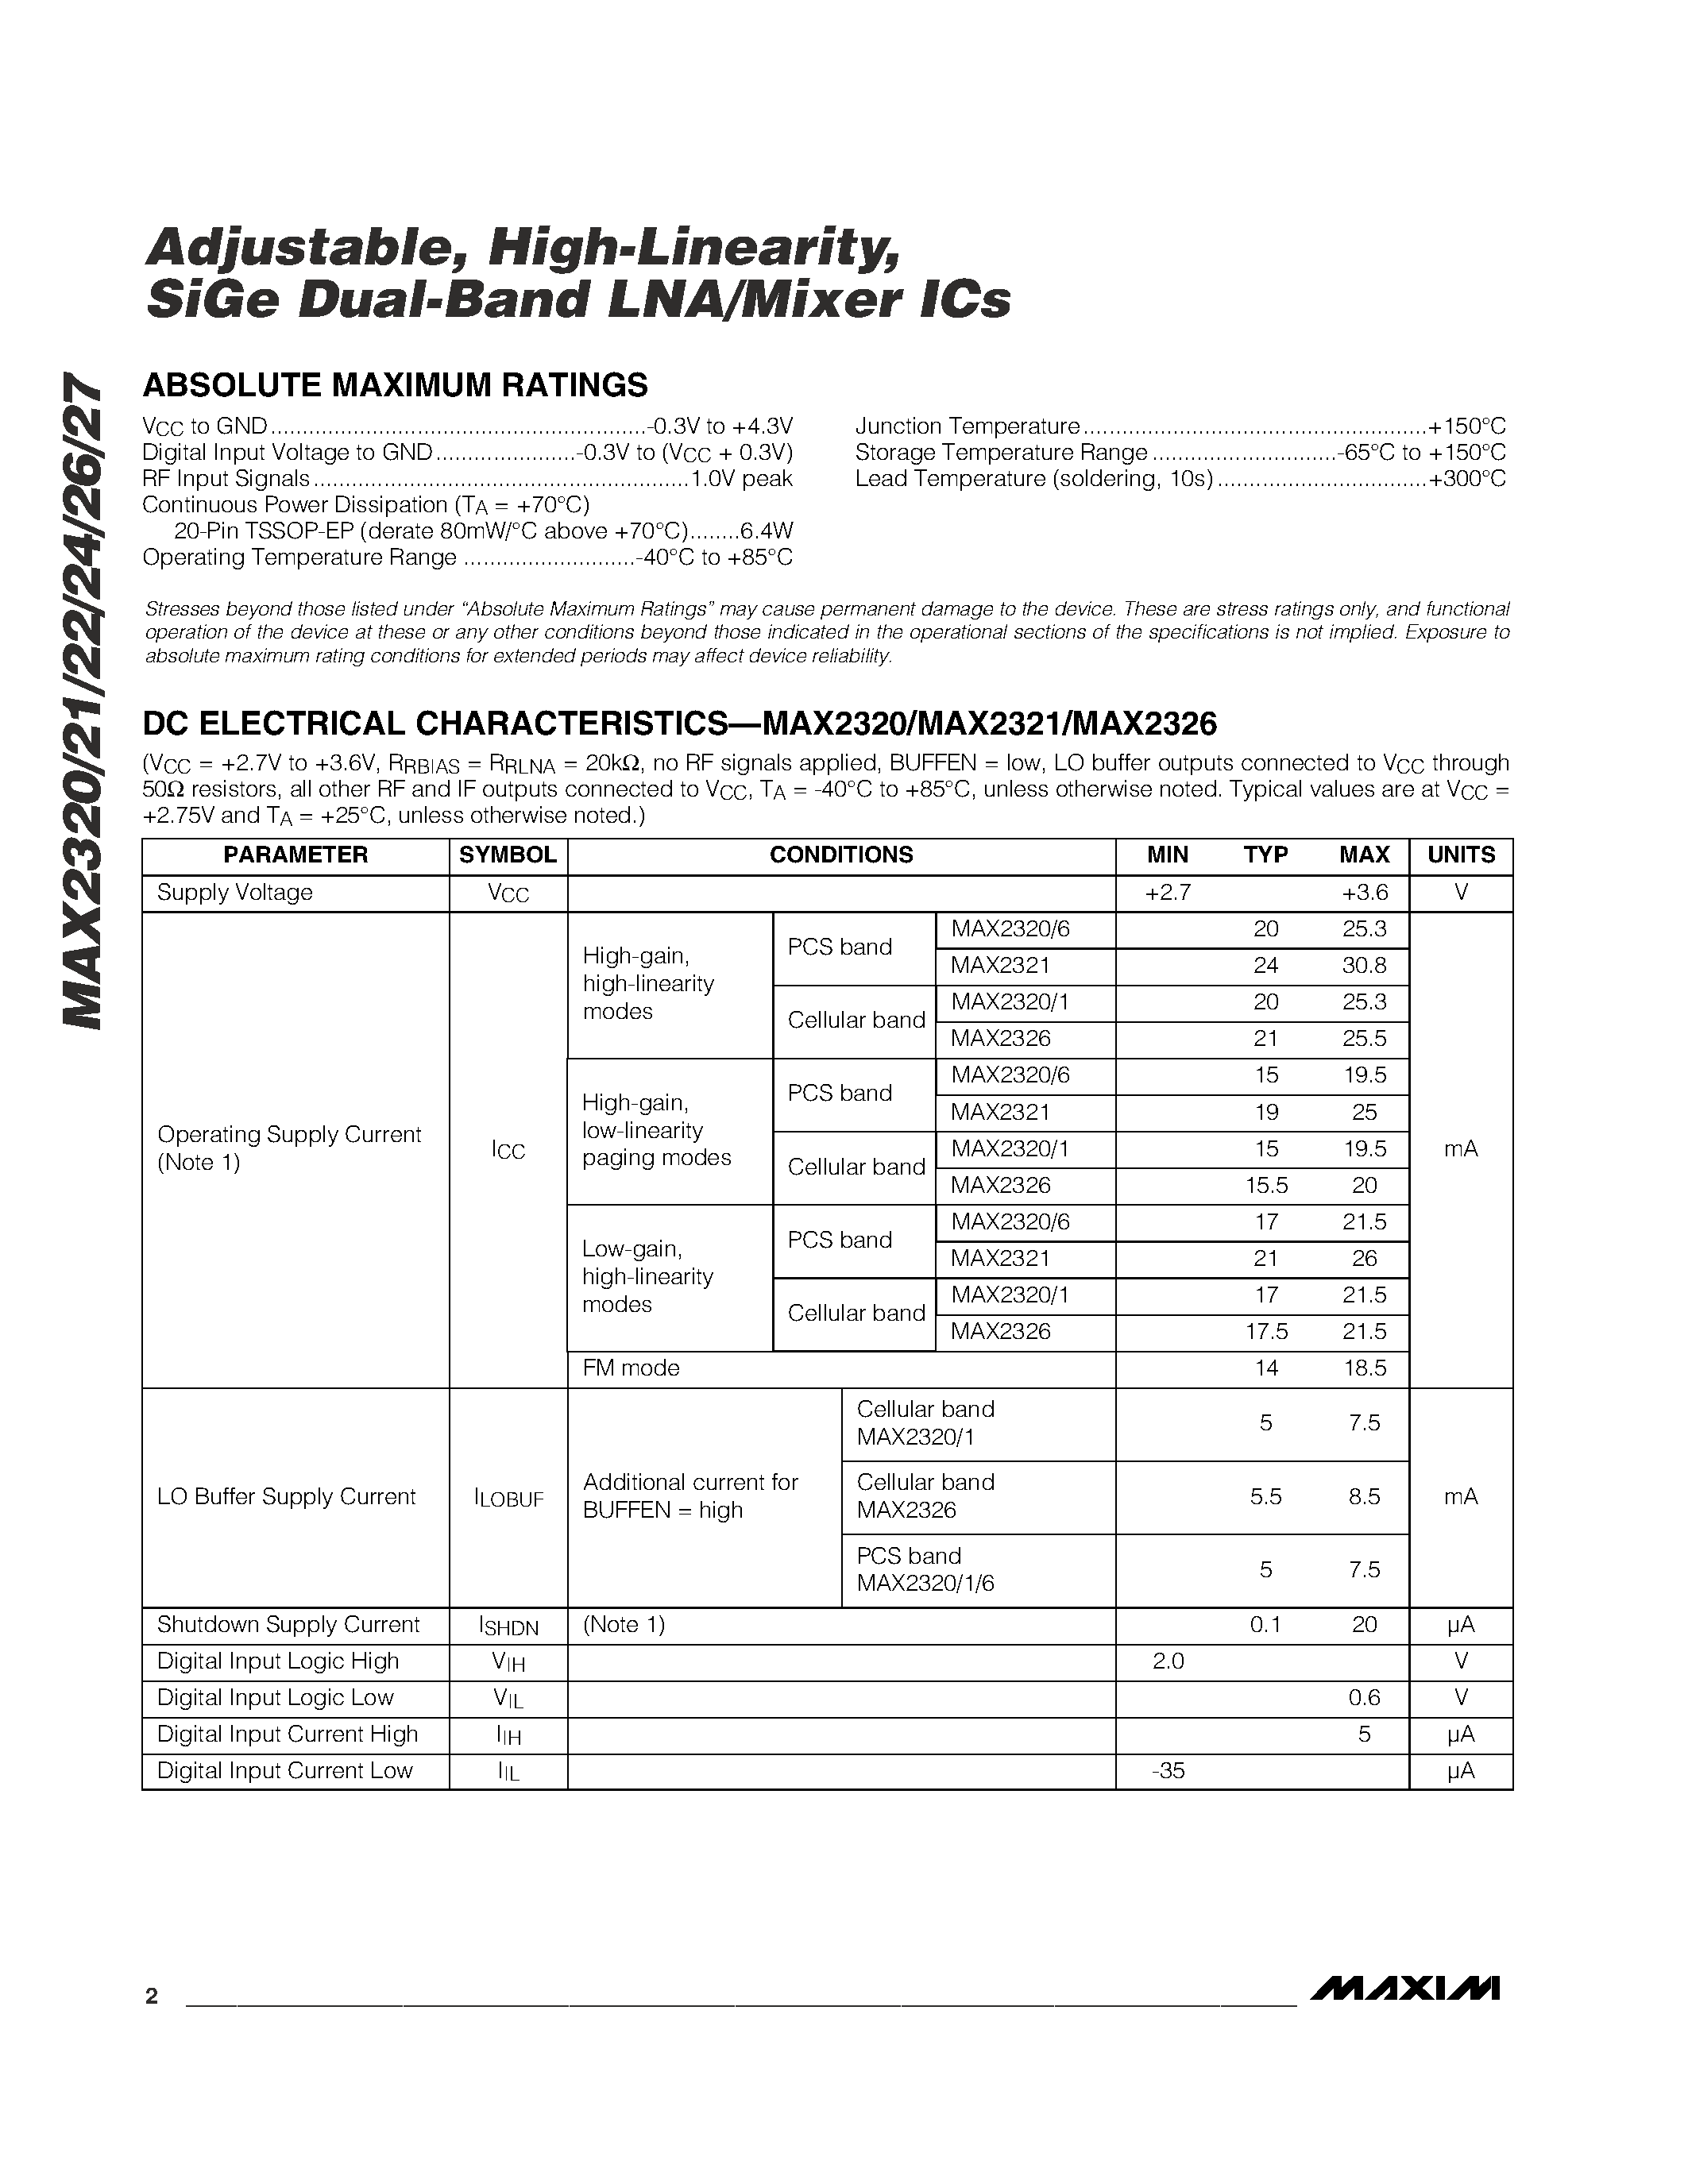 Даташит MAX2320EUP - Adjustable / High-Linearity / SiGe Dual-Band LNA/Mixer ICs страница 2